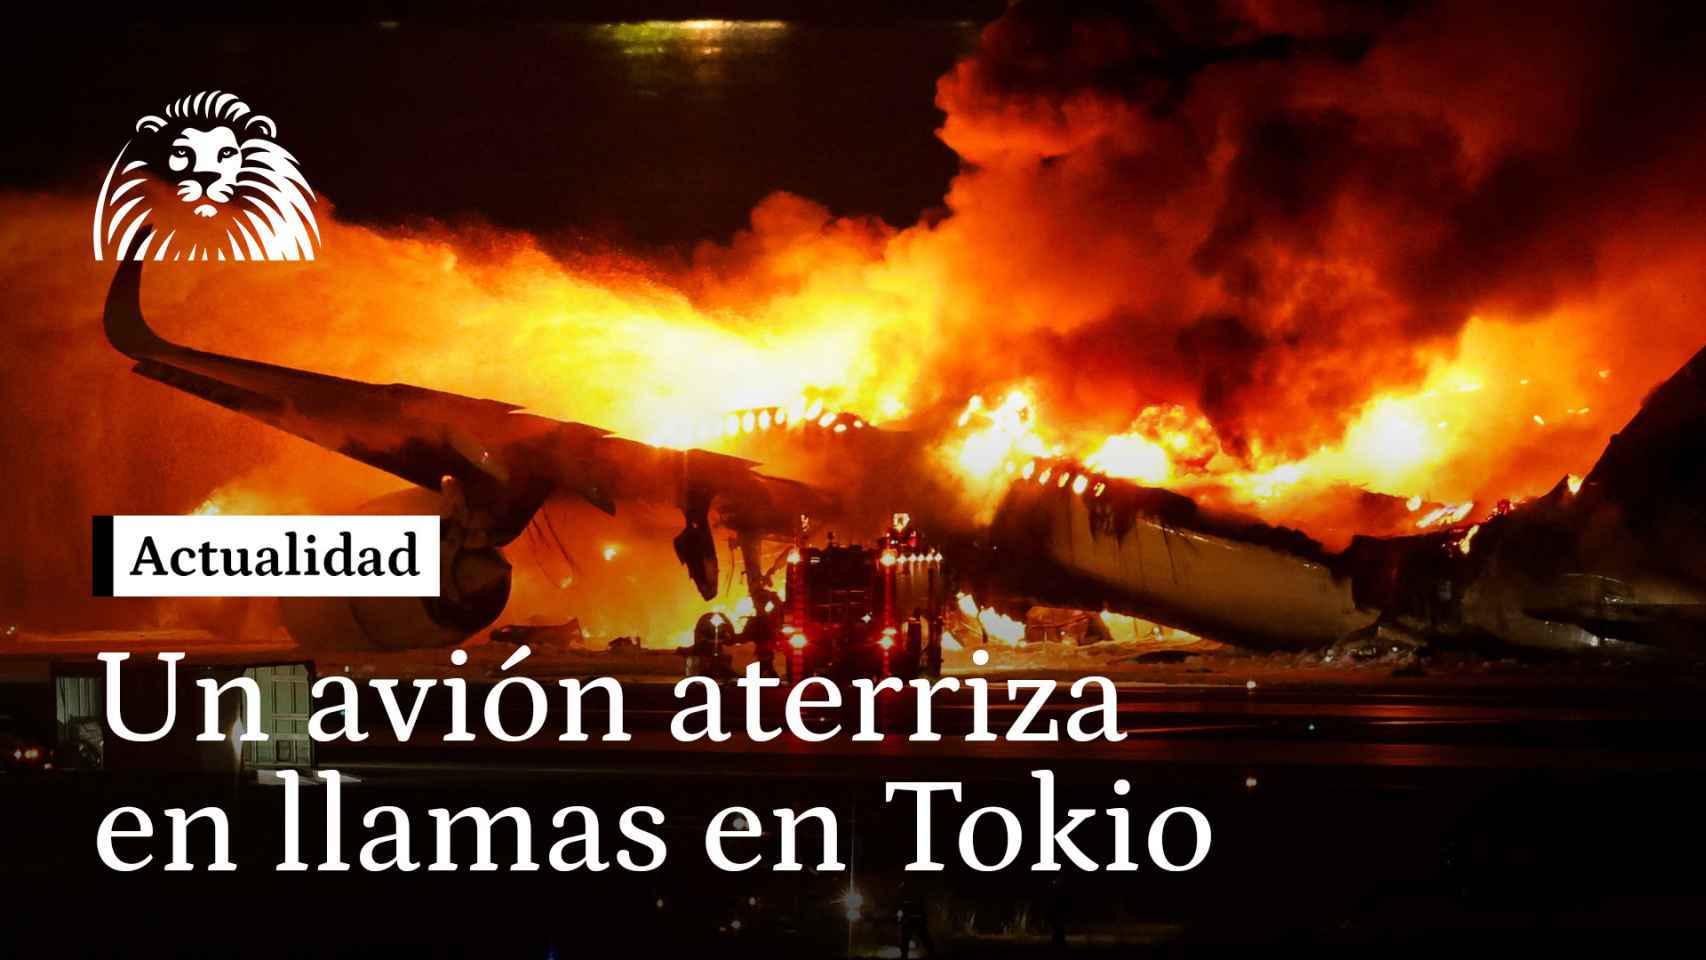 VÍDEO | Así ha aterrizado, envuelto en llamas, un avión de la aerolinea Japan Airlines en Tokio